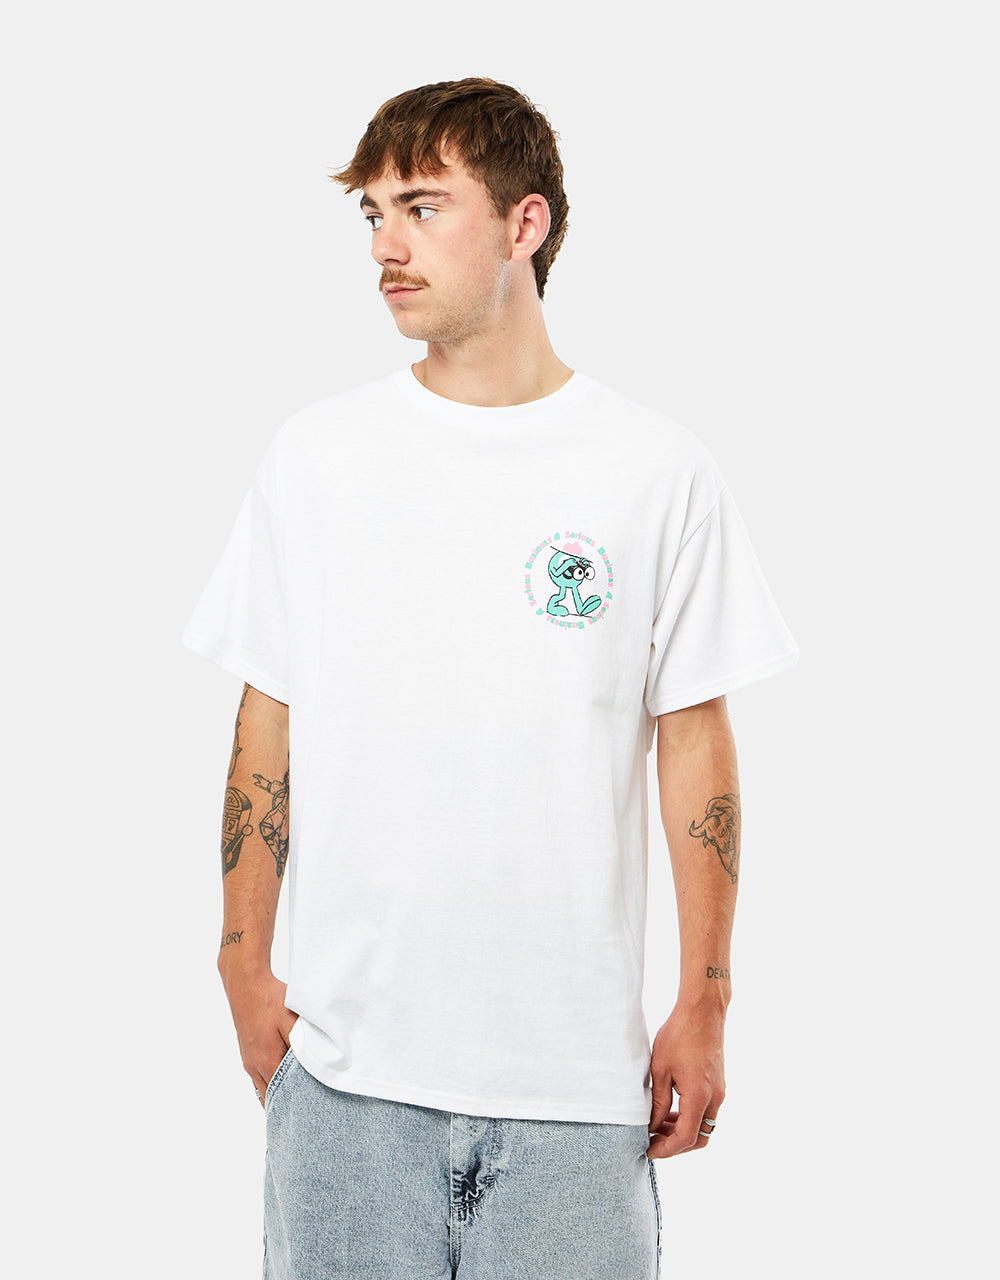 Playdude Factory T-Shirt - White